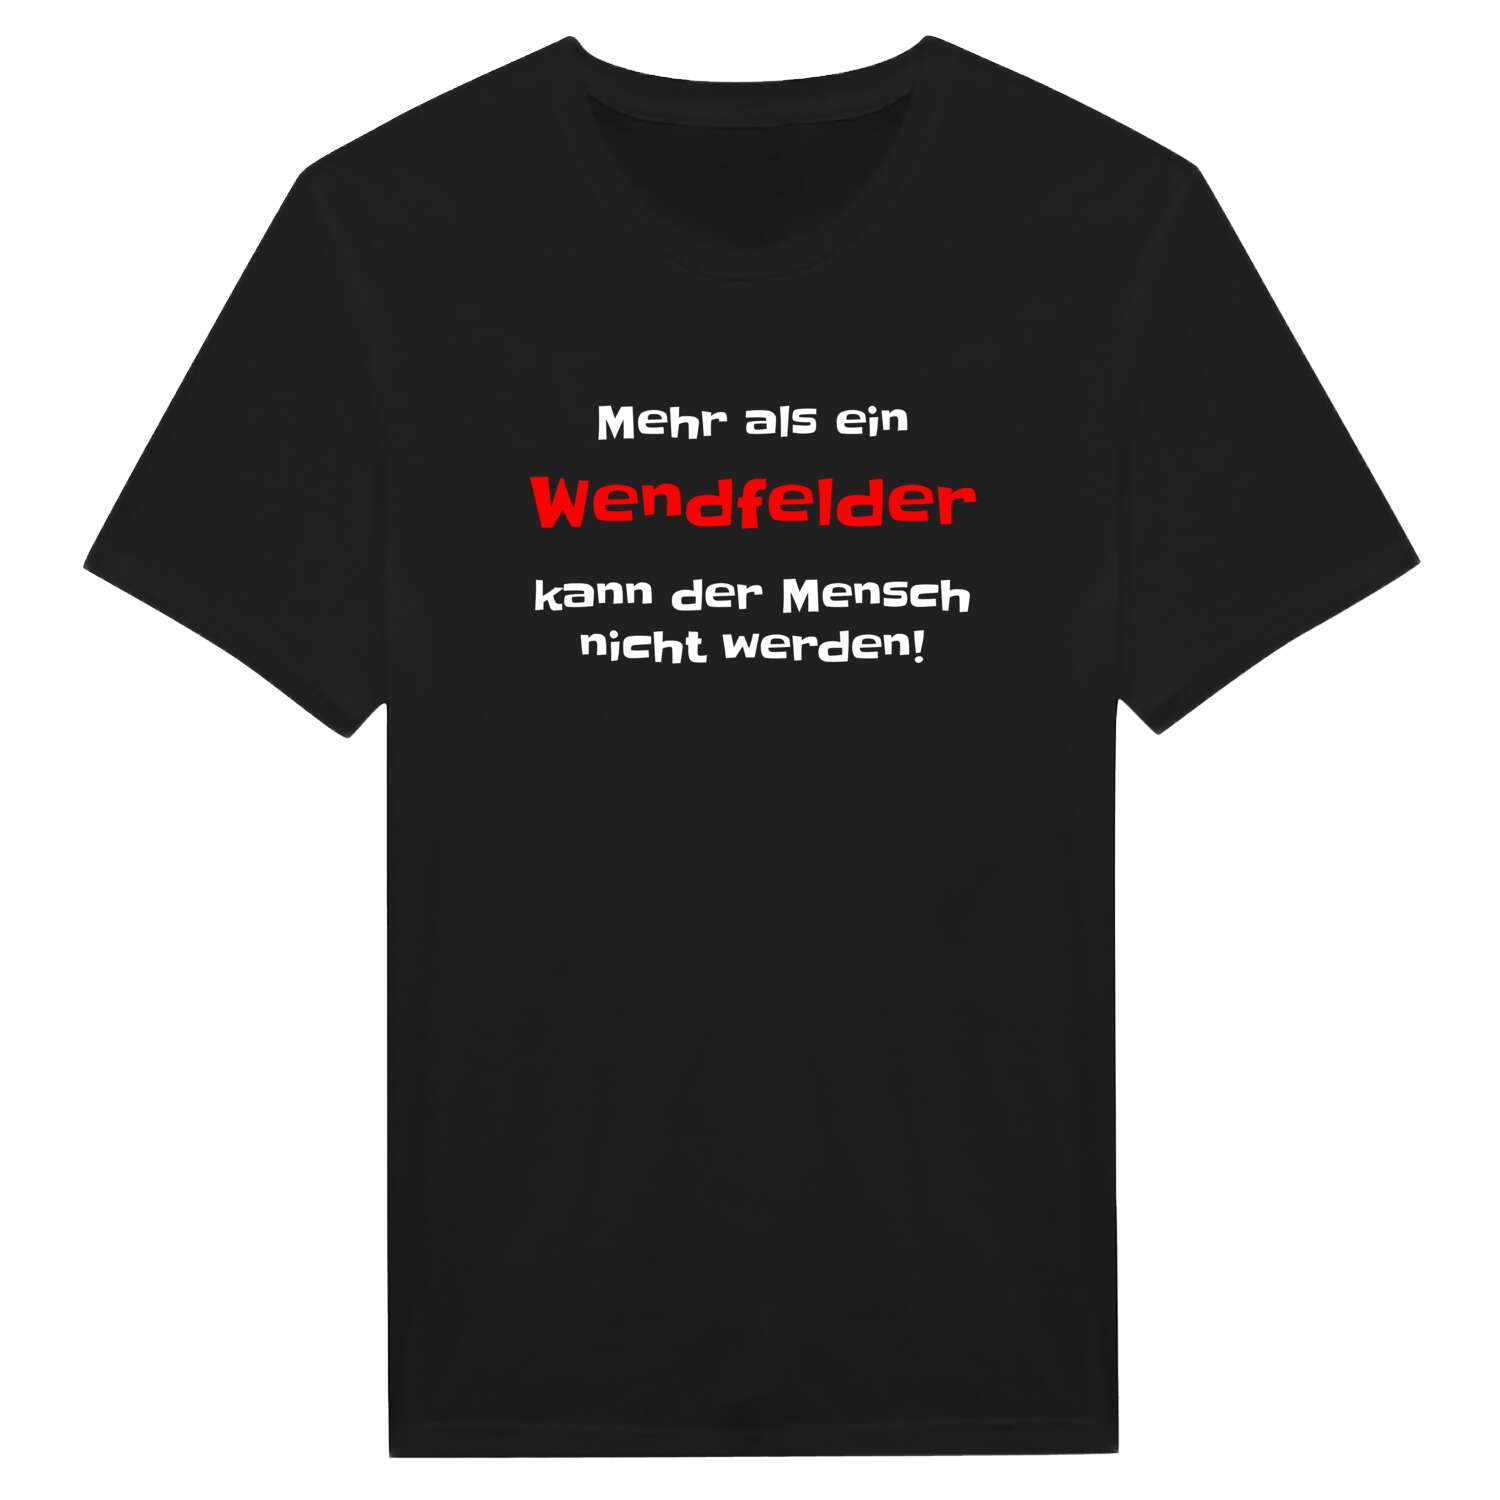 Wendfeld T-Shirt »Mehr als ein«